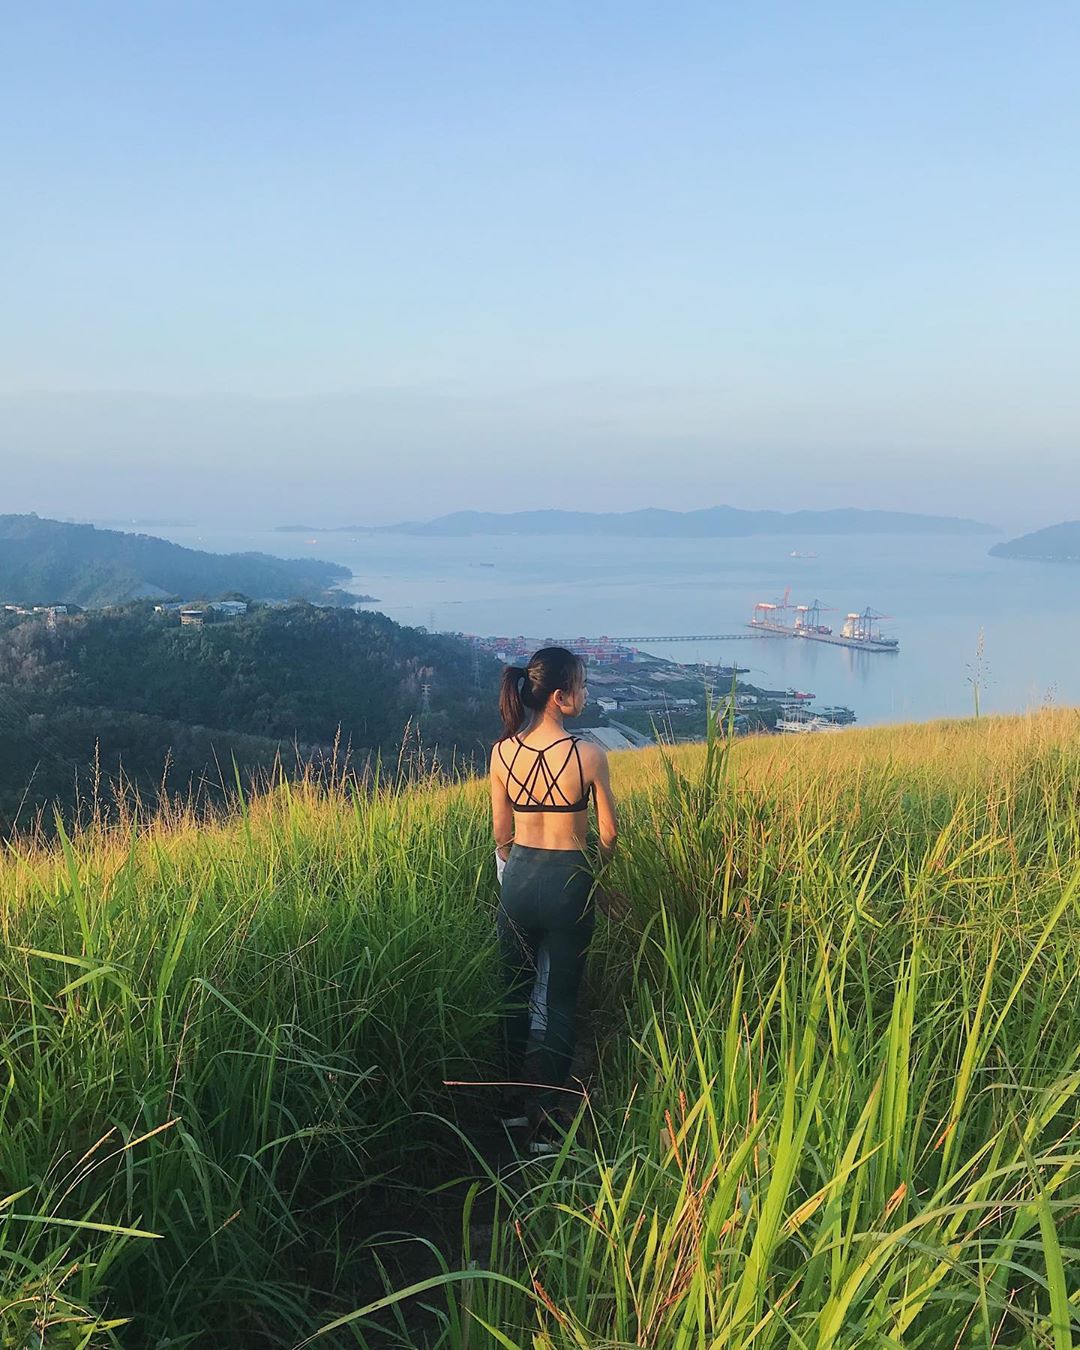 Sabah hiking trails - Bukit Botak wild grass